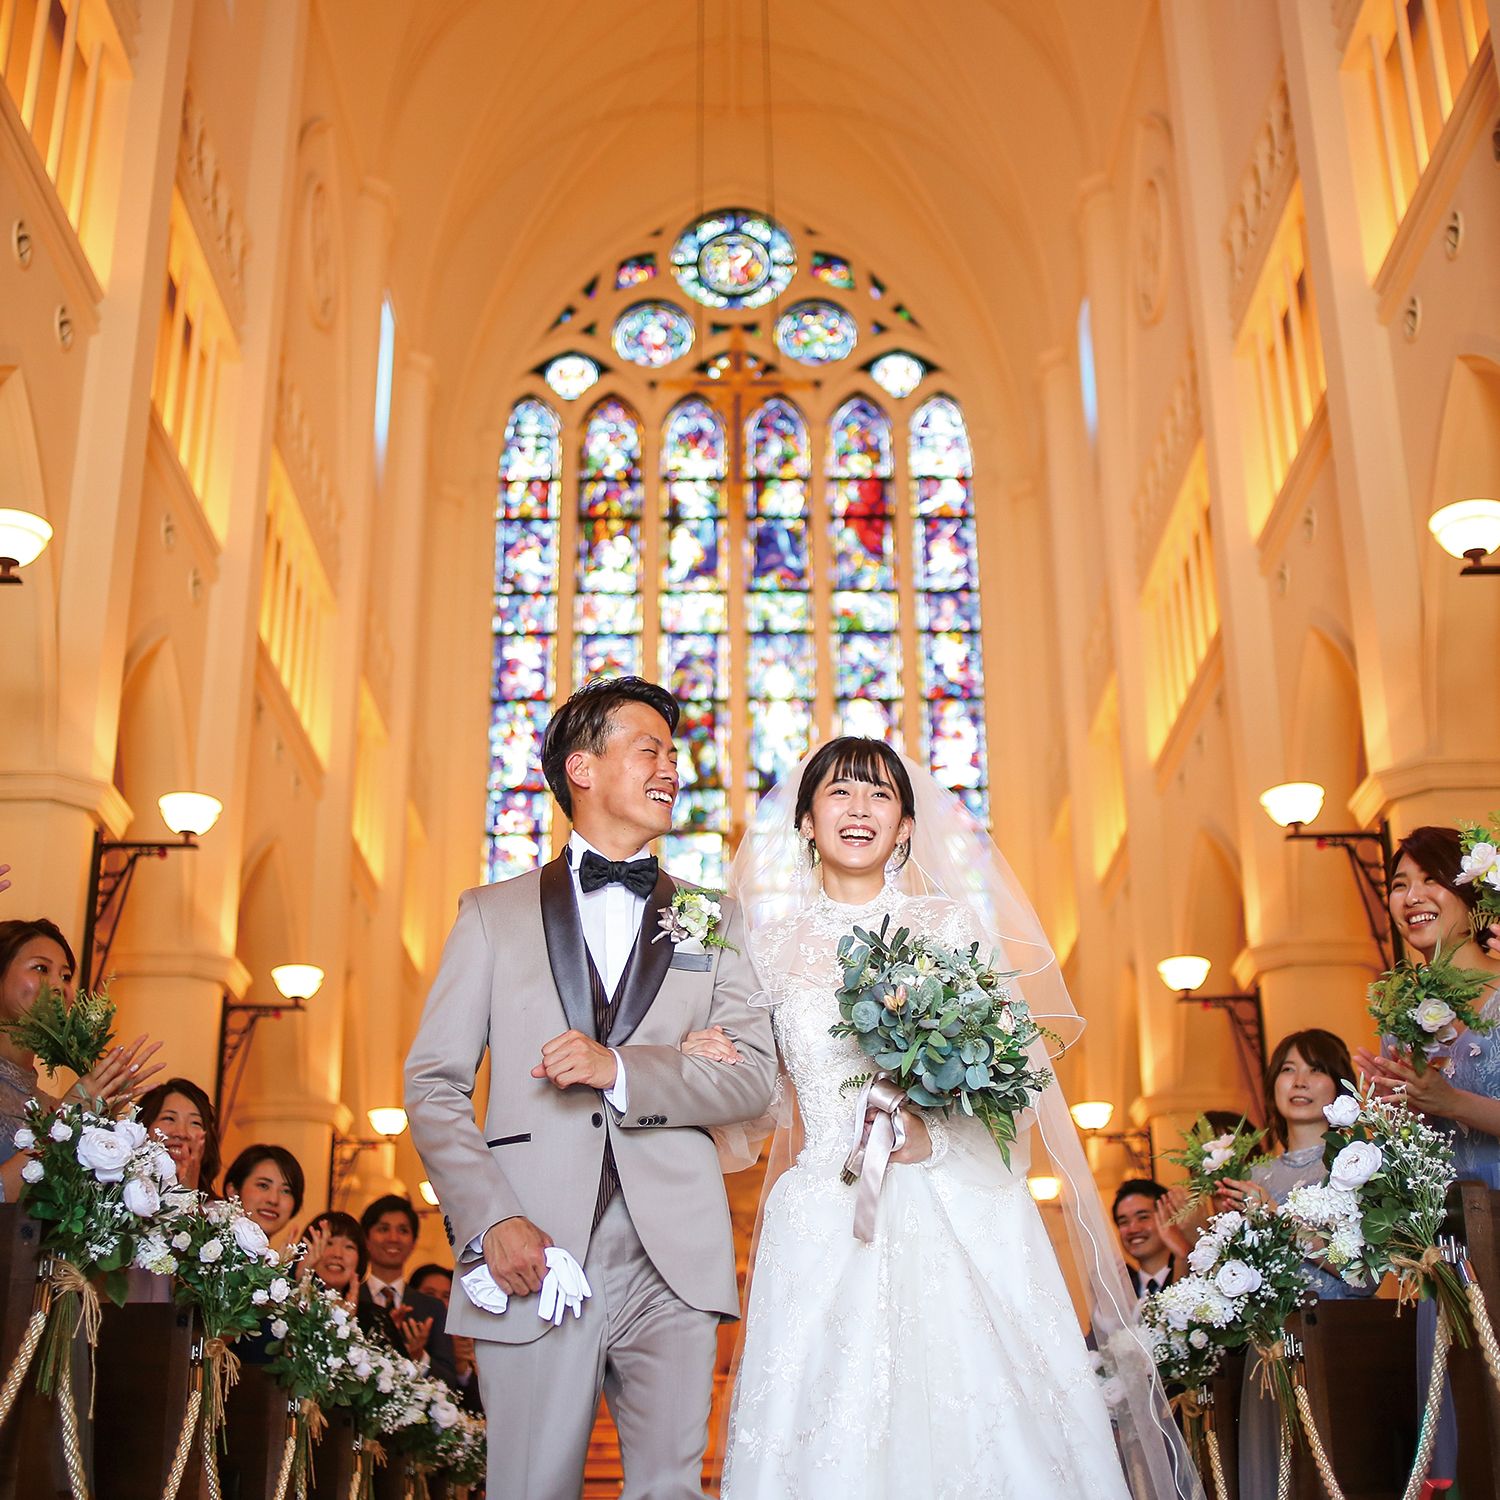 花嫁の憧れが詰まった大聖堂に注目
海外リゾートで過ごすような一日を実現